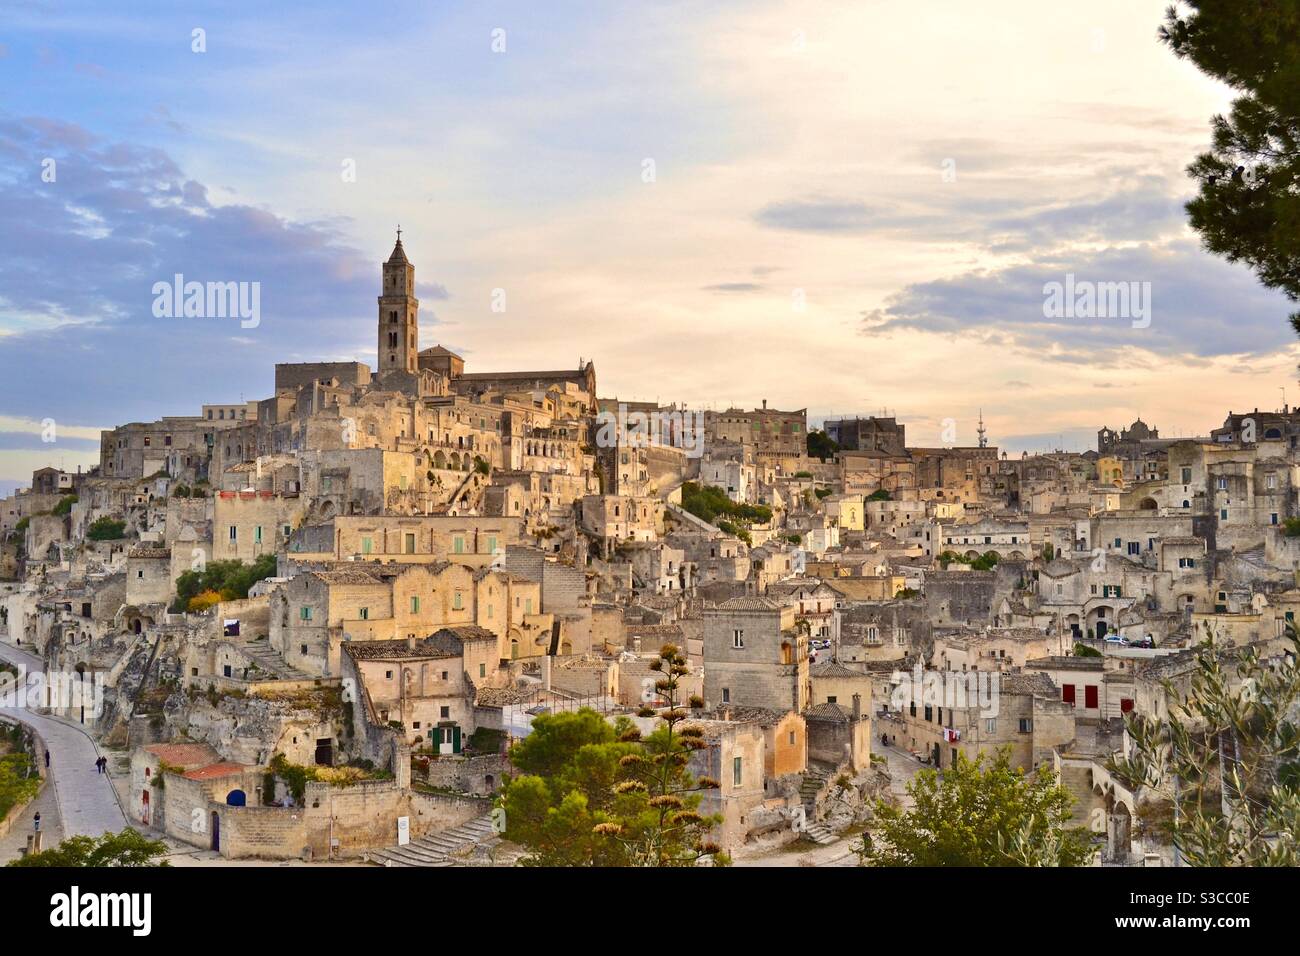 La più magica e bella città collinare antica di Matera Nel sud Italia al tramonto con un cielo morbido opalescente e luce dorata che splende sulle case e sulla chiesa sottostante Foto Stock